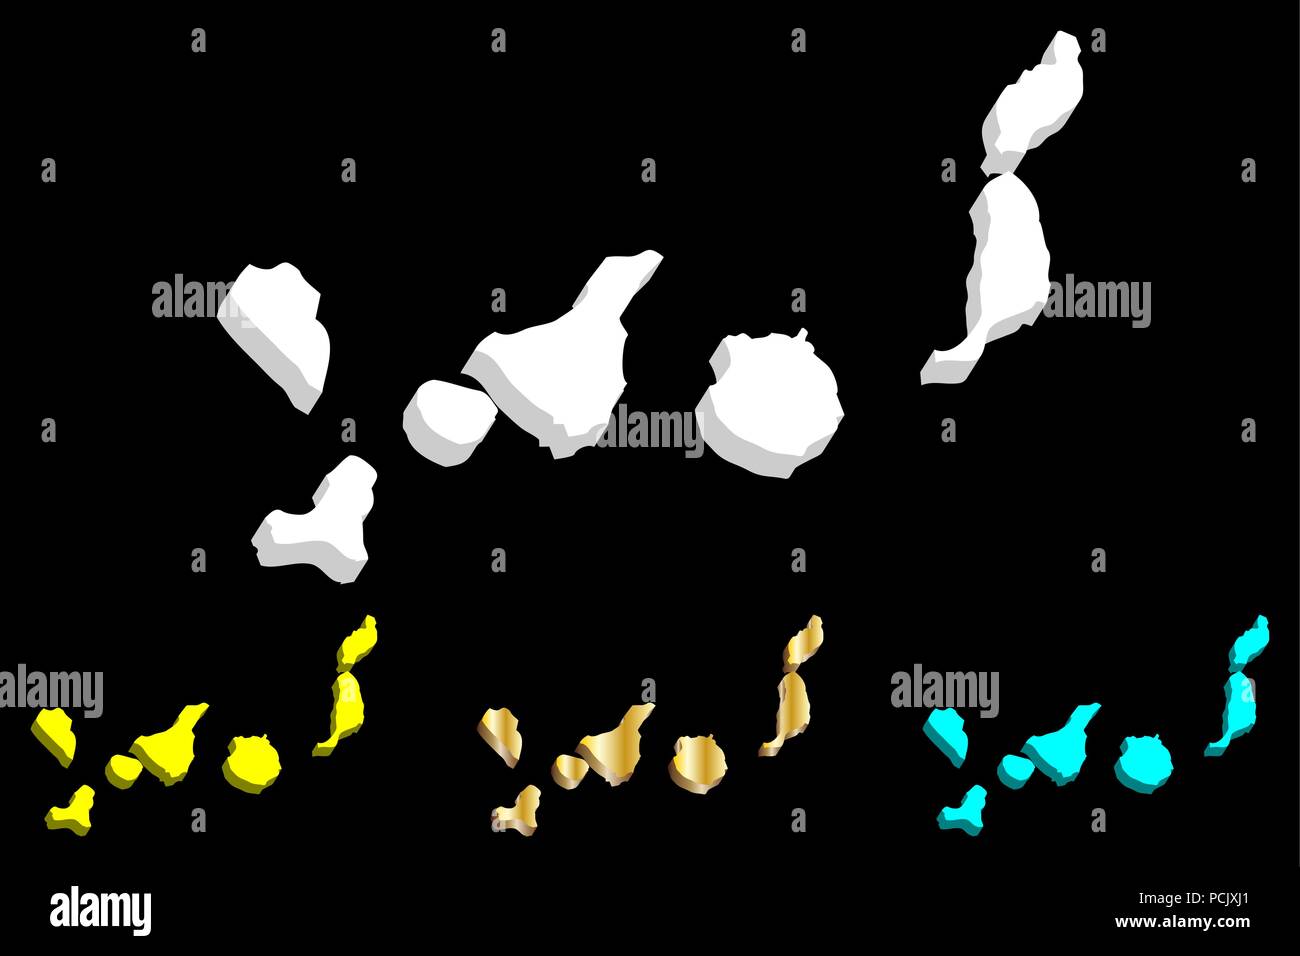 Mapa 3D de Canarias (Islas Canarias) - blanco, amarillo, azul y oro - ilustración vectorial Ilustración del Vector